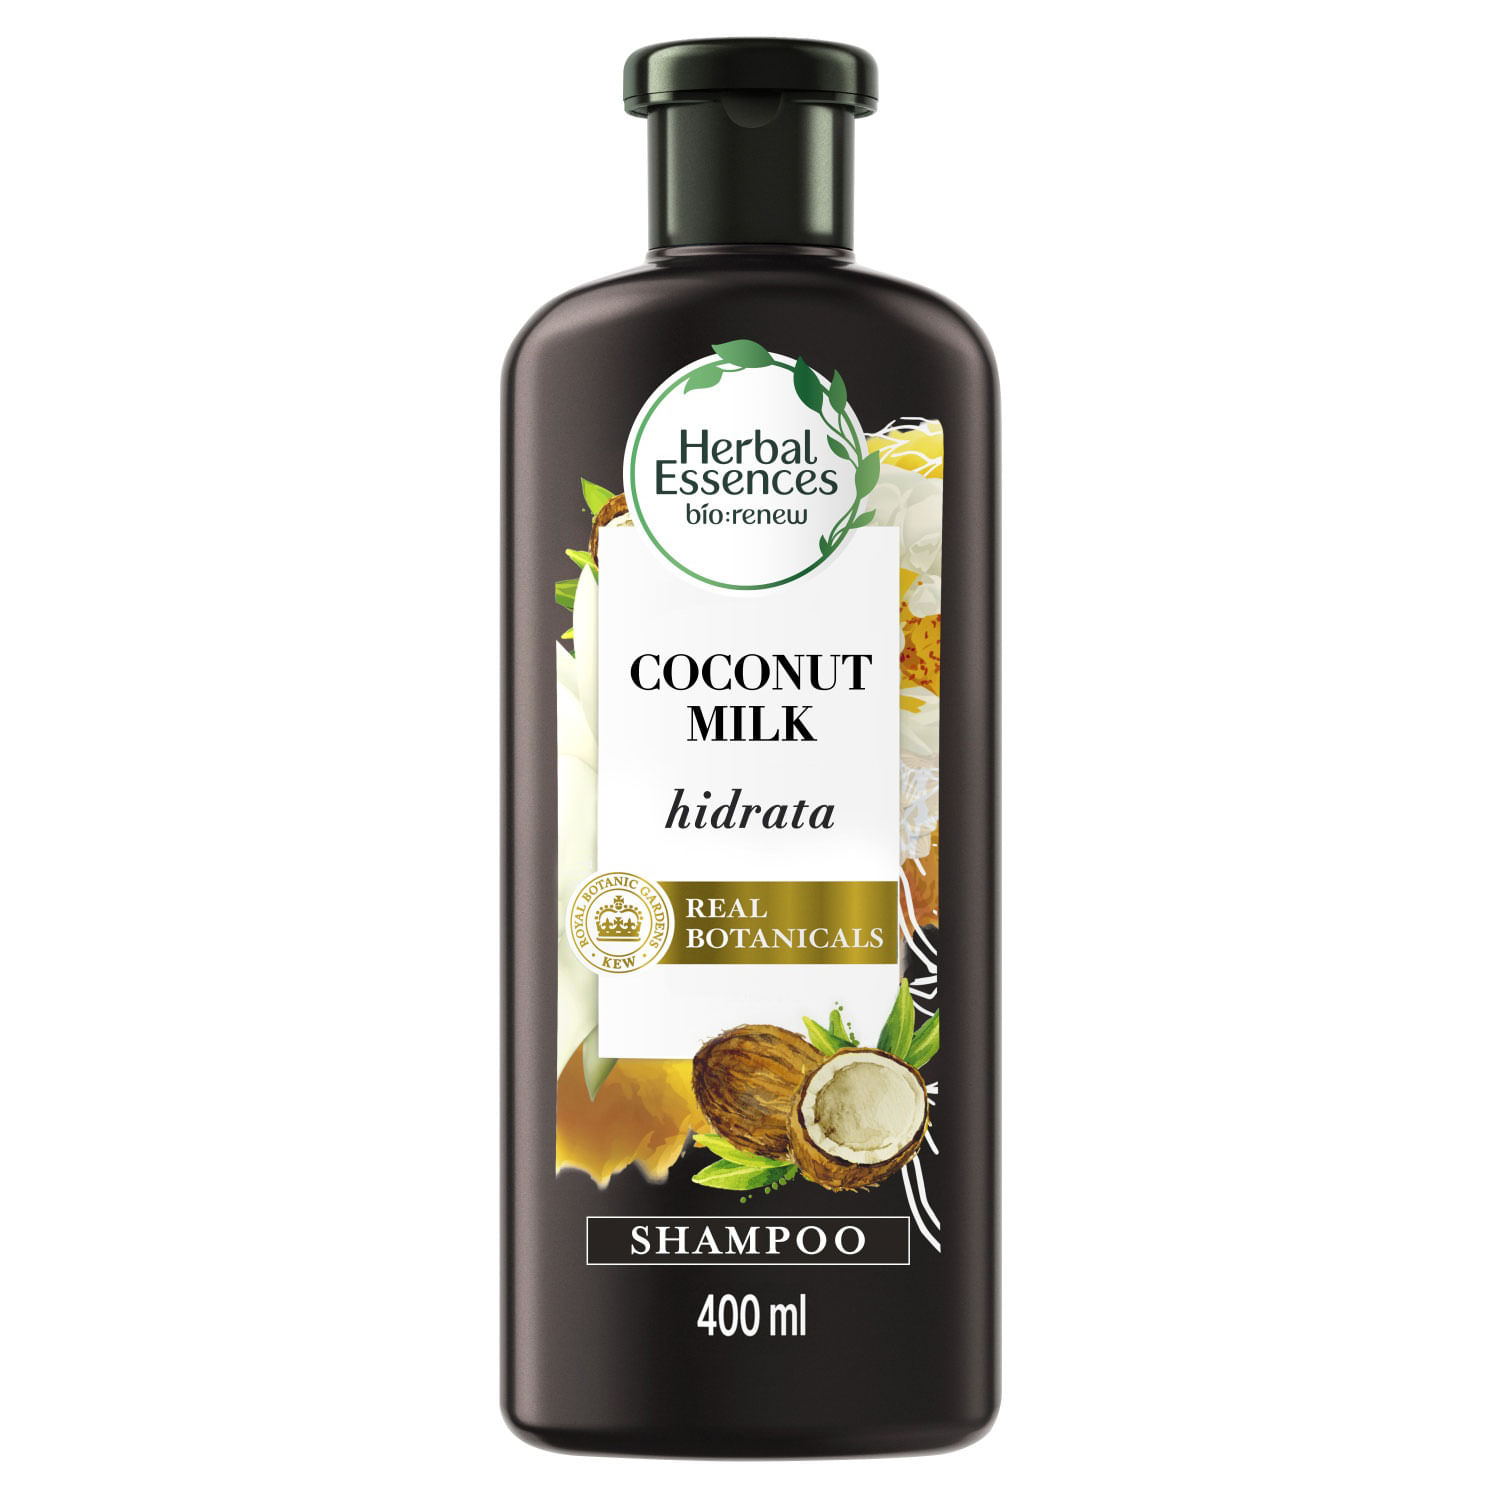 Shampoo Herbal Essences Pelo largo granada & proteína vegana 600 ml